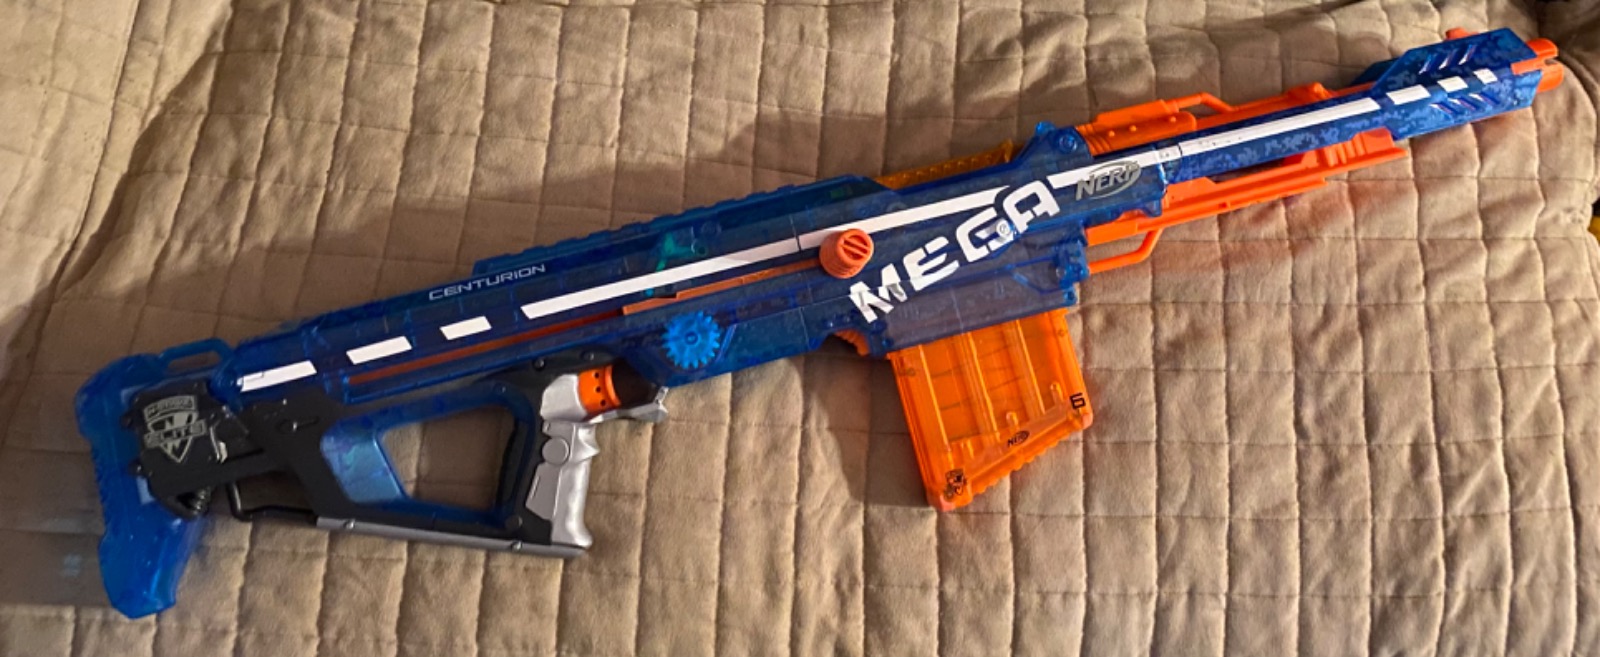 Nerf Mega Elite Centurion - Pistolet Nerf